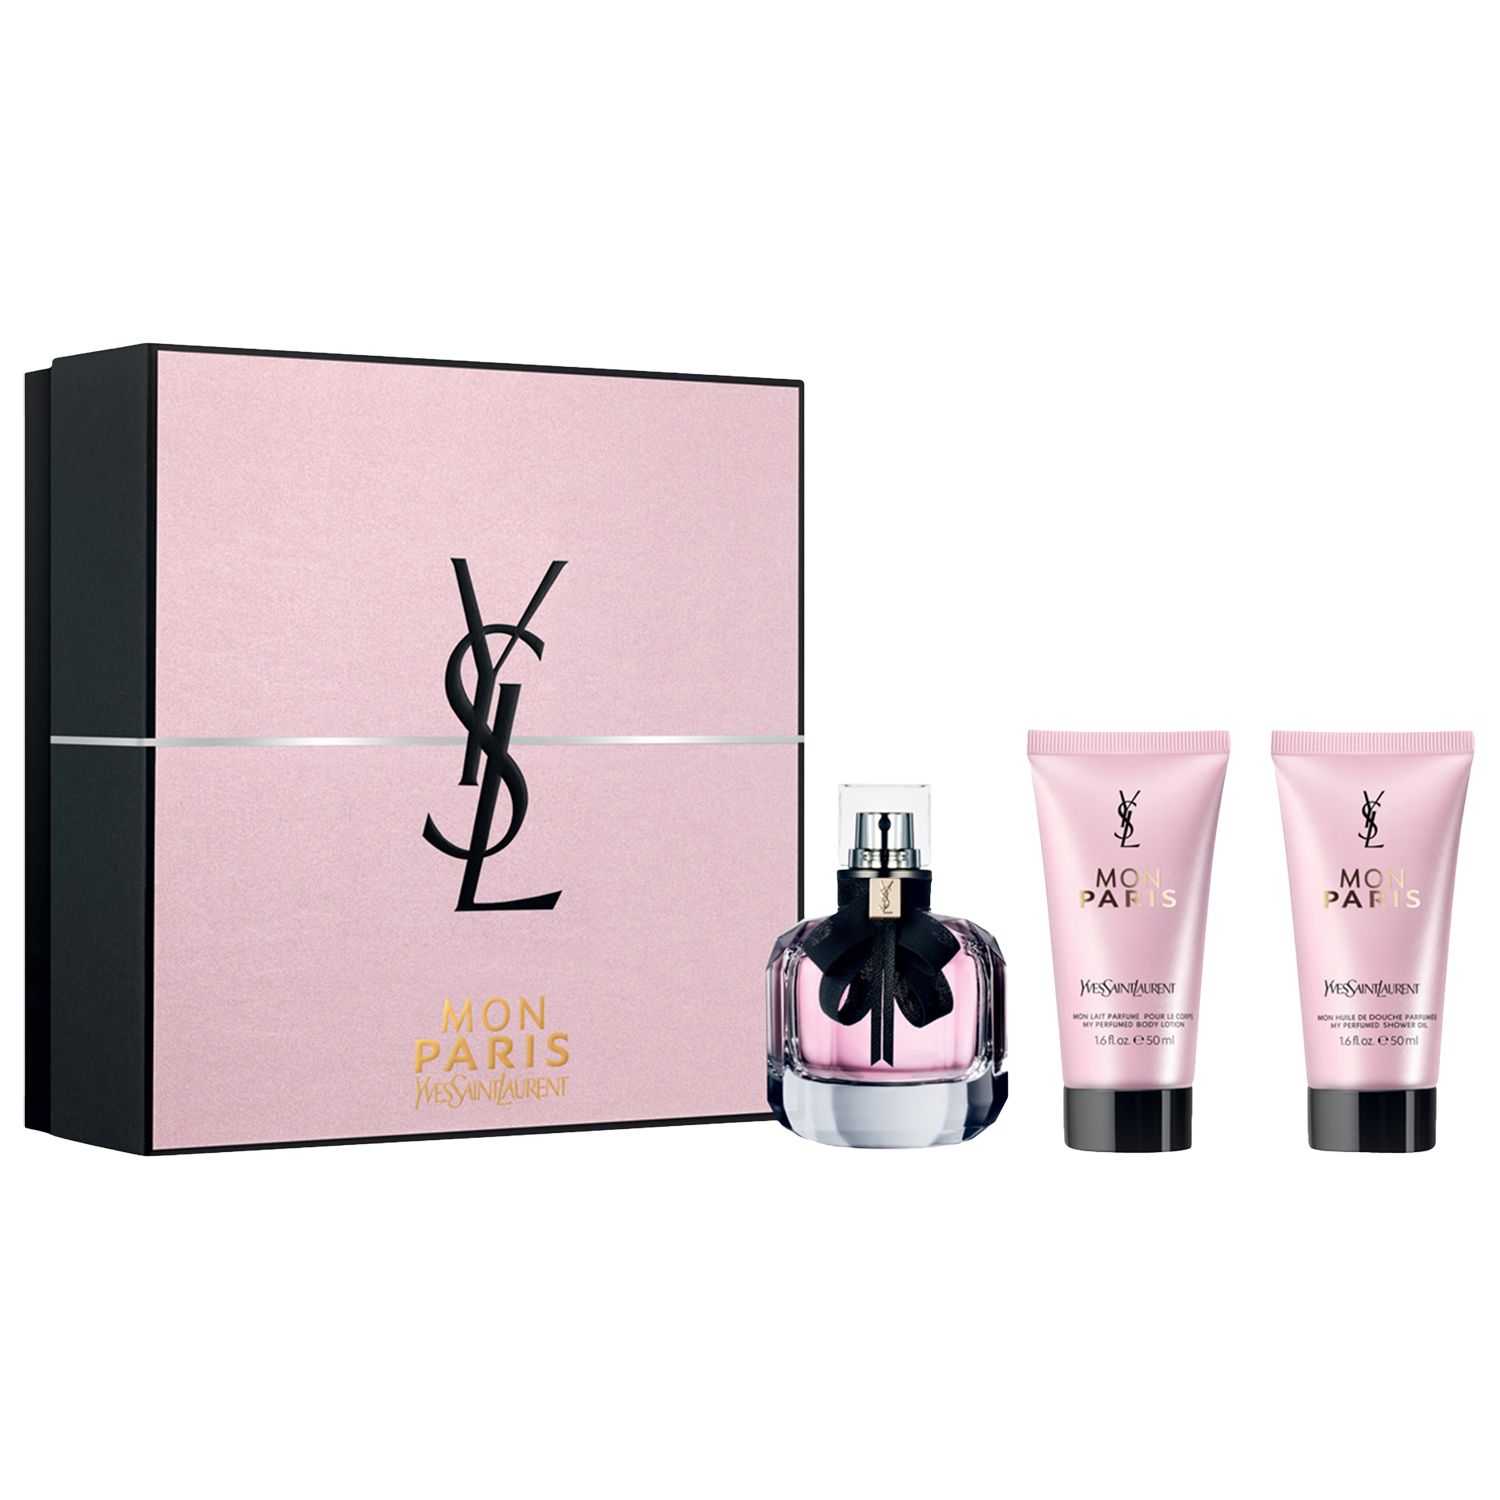 Yves Saint Laurent Mon Paris 50ml Eau de Parfum Gift Set